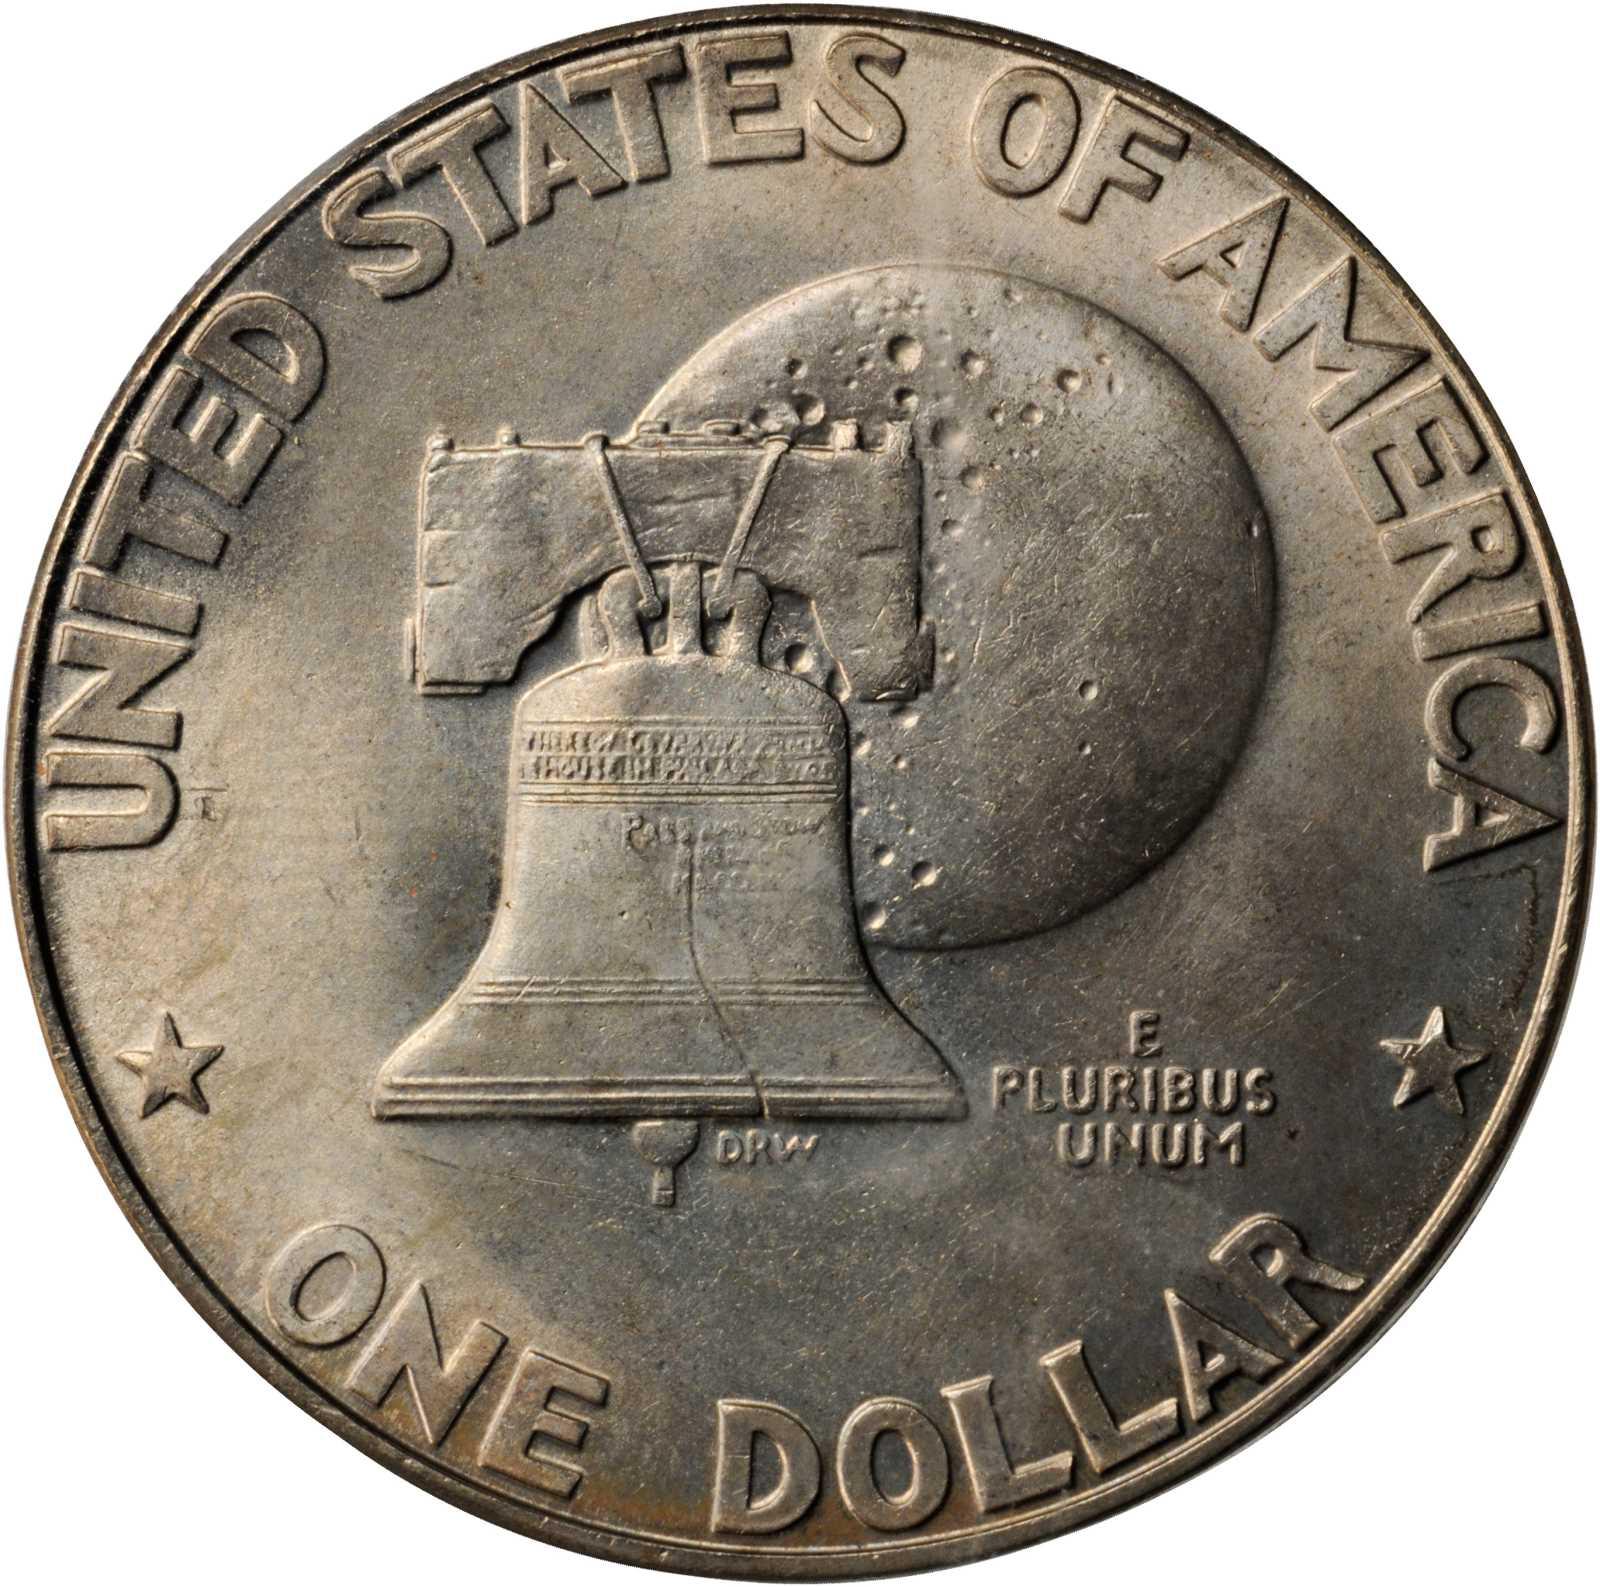 1976 d one dollar coin value